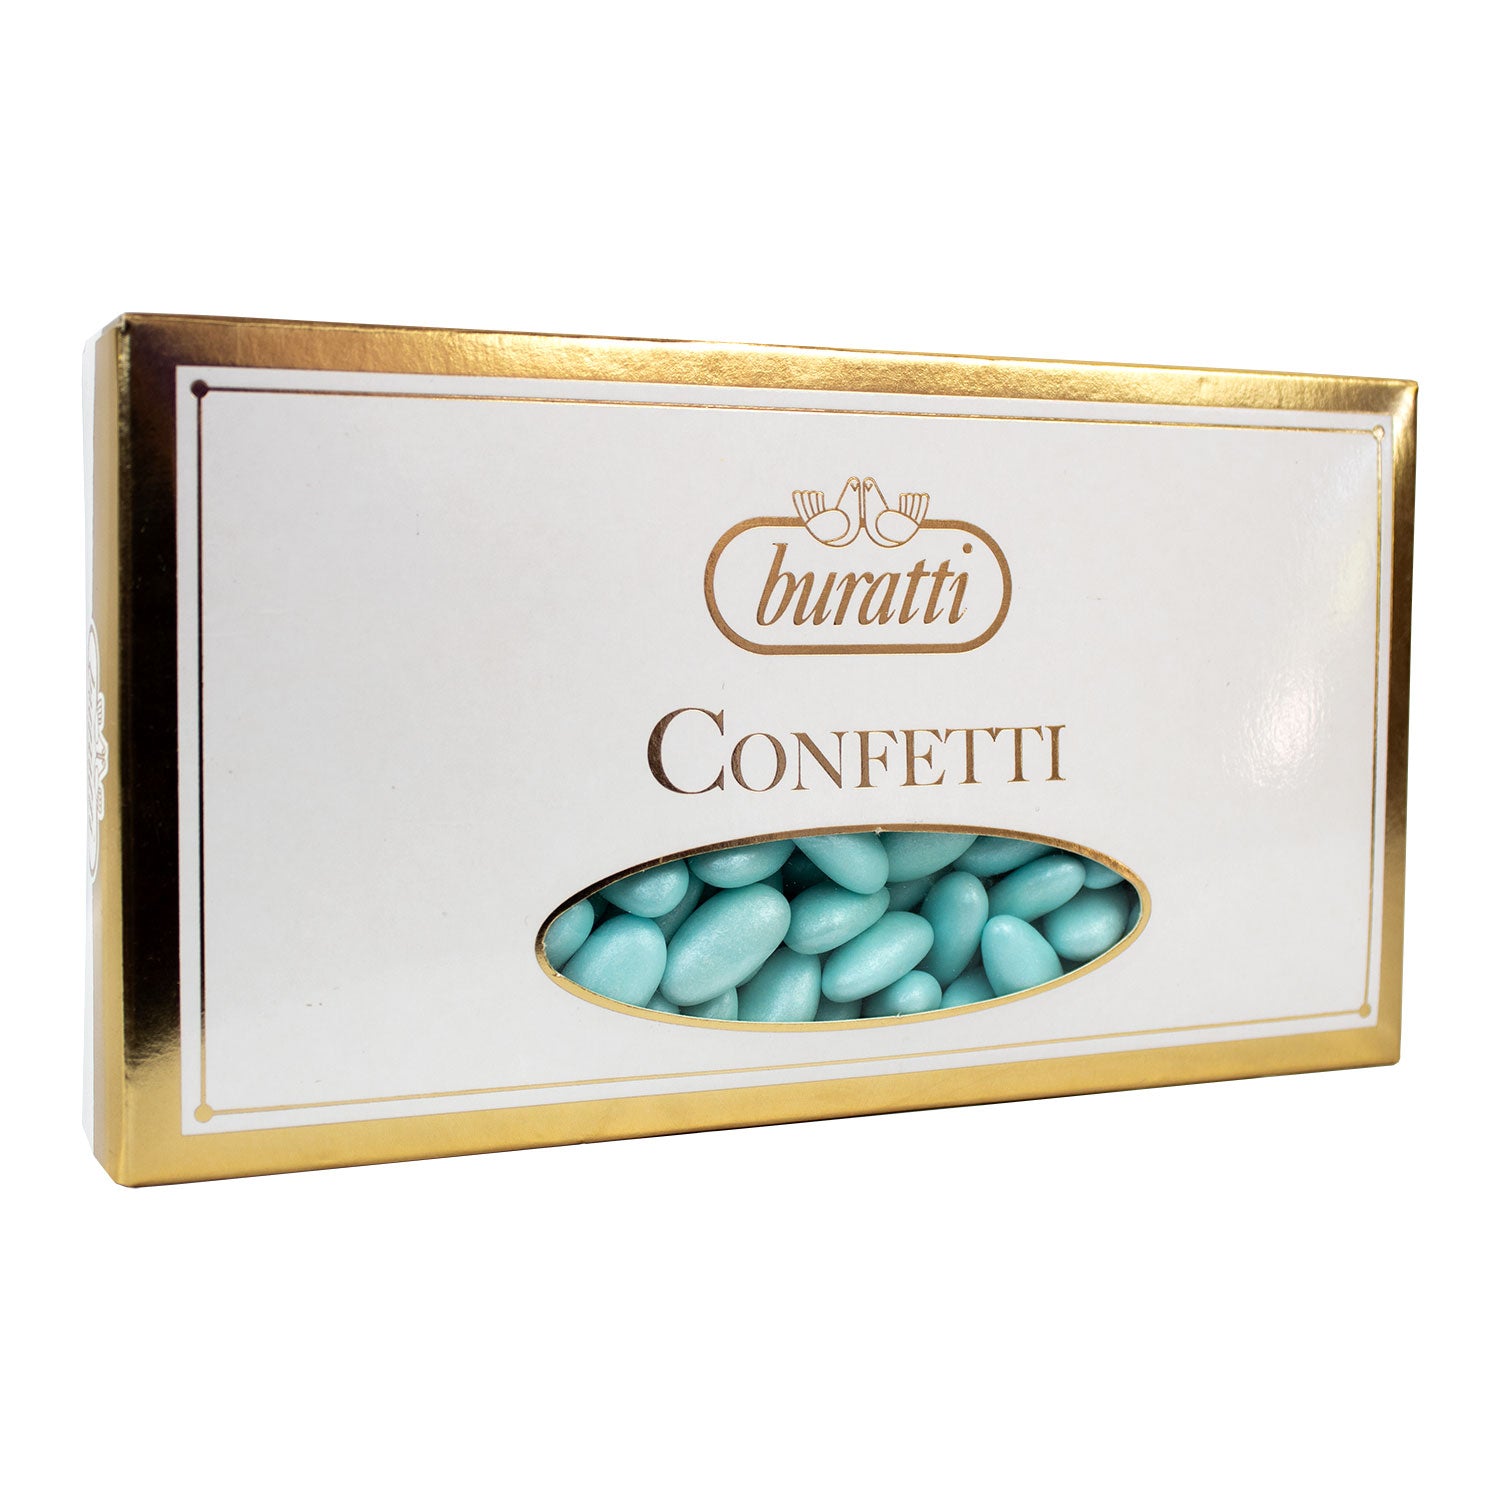 Buratti Confetti Perlati Azzurri - 1 kg – dolcincasa